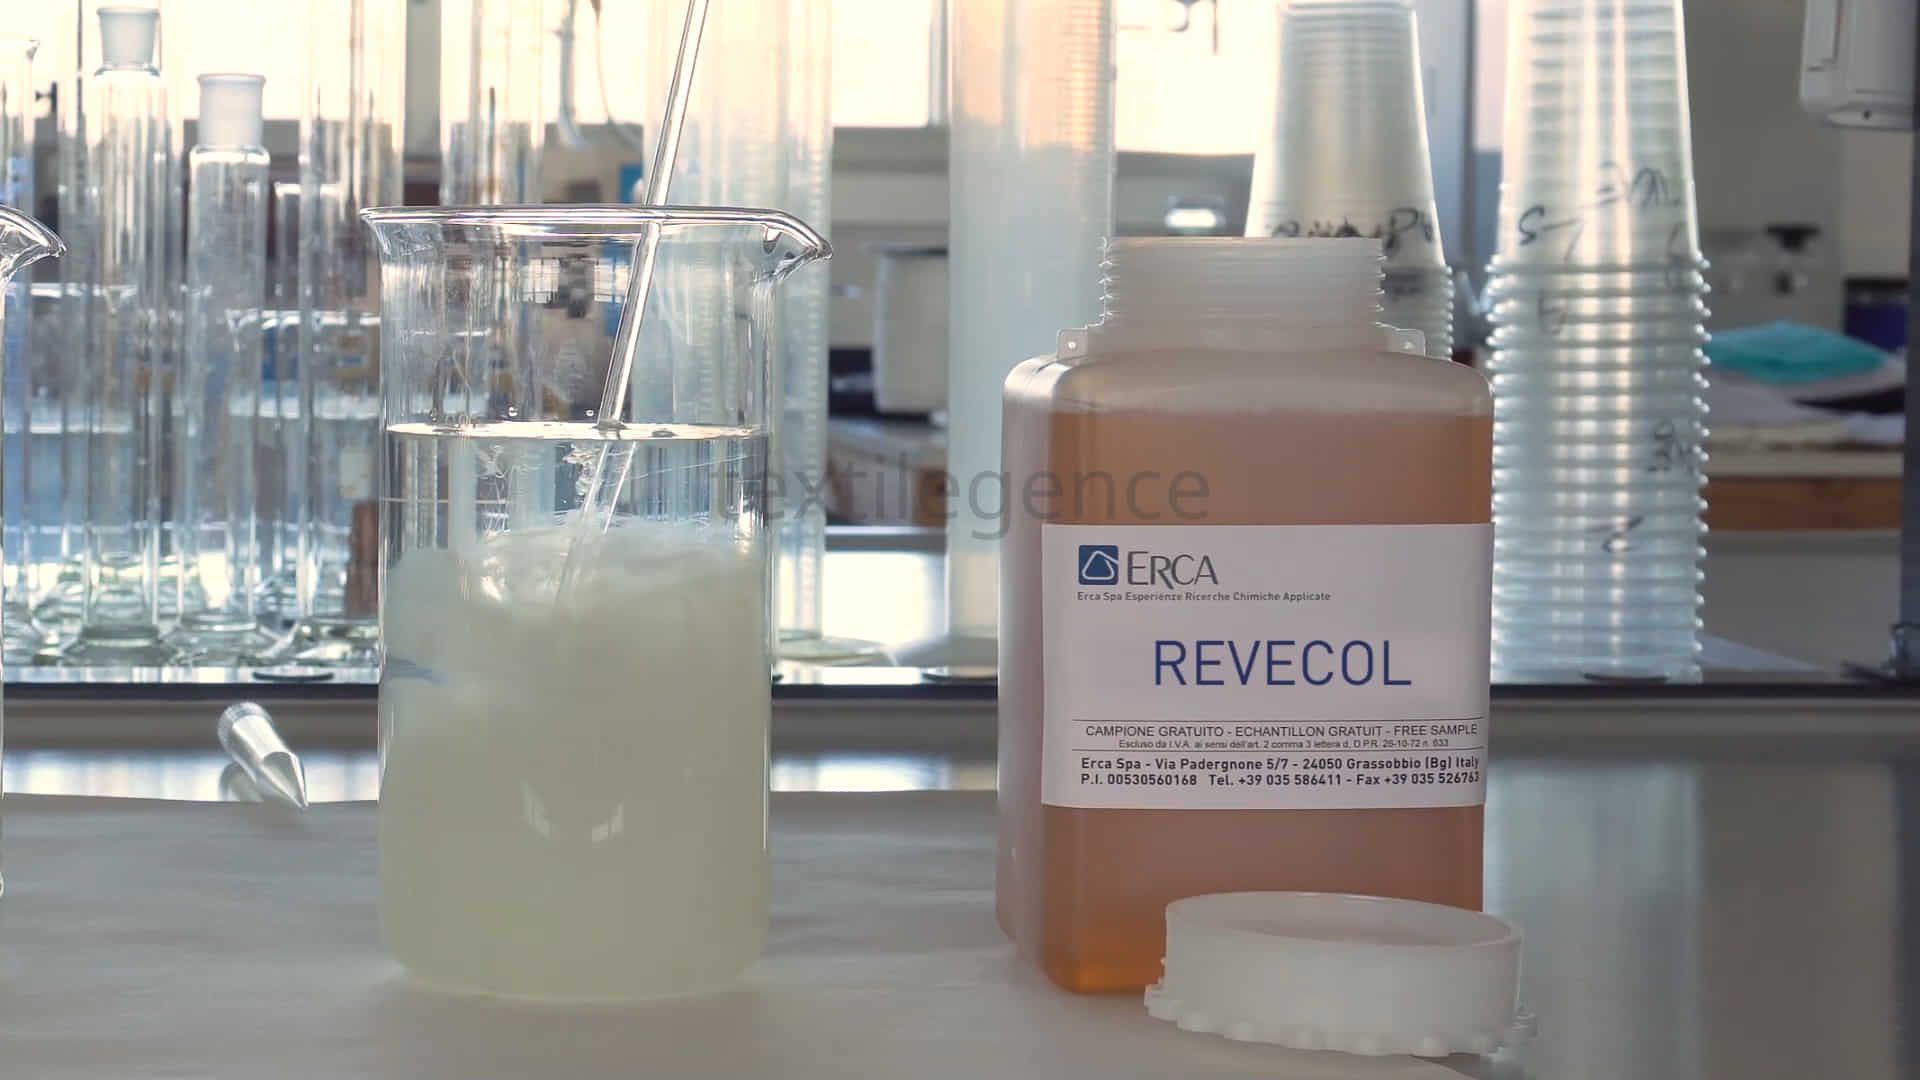 REVECOL yeni nesil kimyasal yardımcılarla sorunları çözüme dönüştürüyor Görsel Kaynak: ERCA